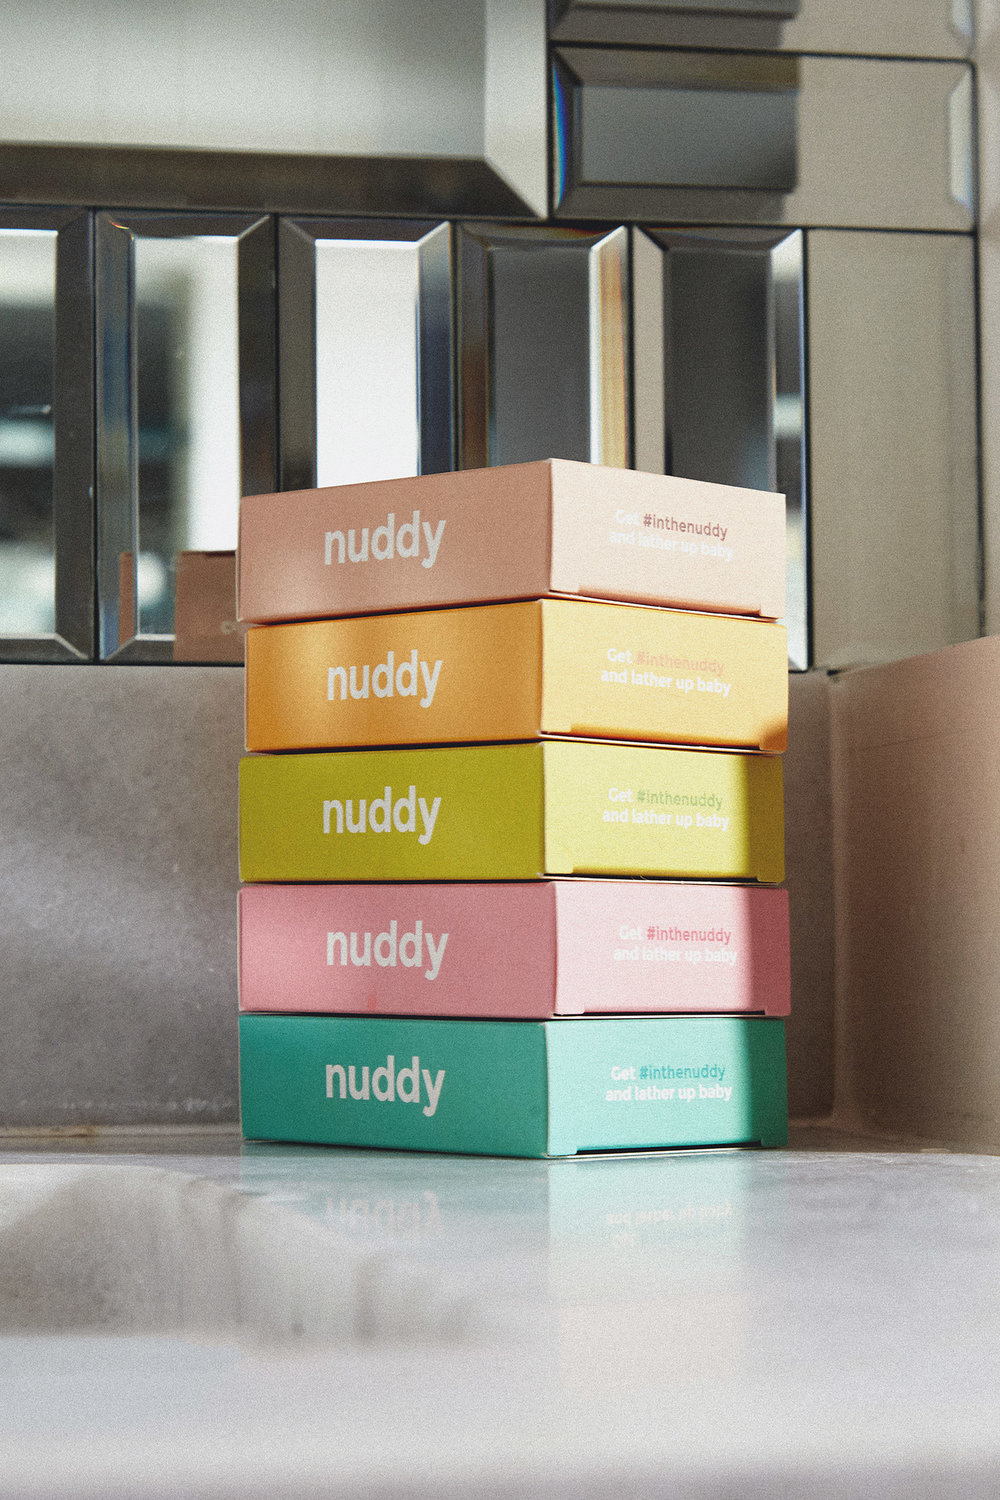 nuddy-all2.jpg